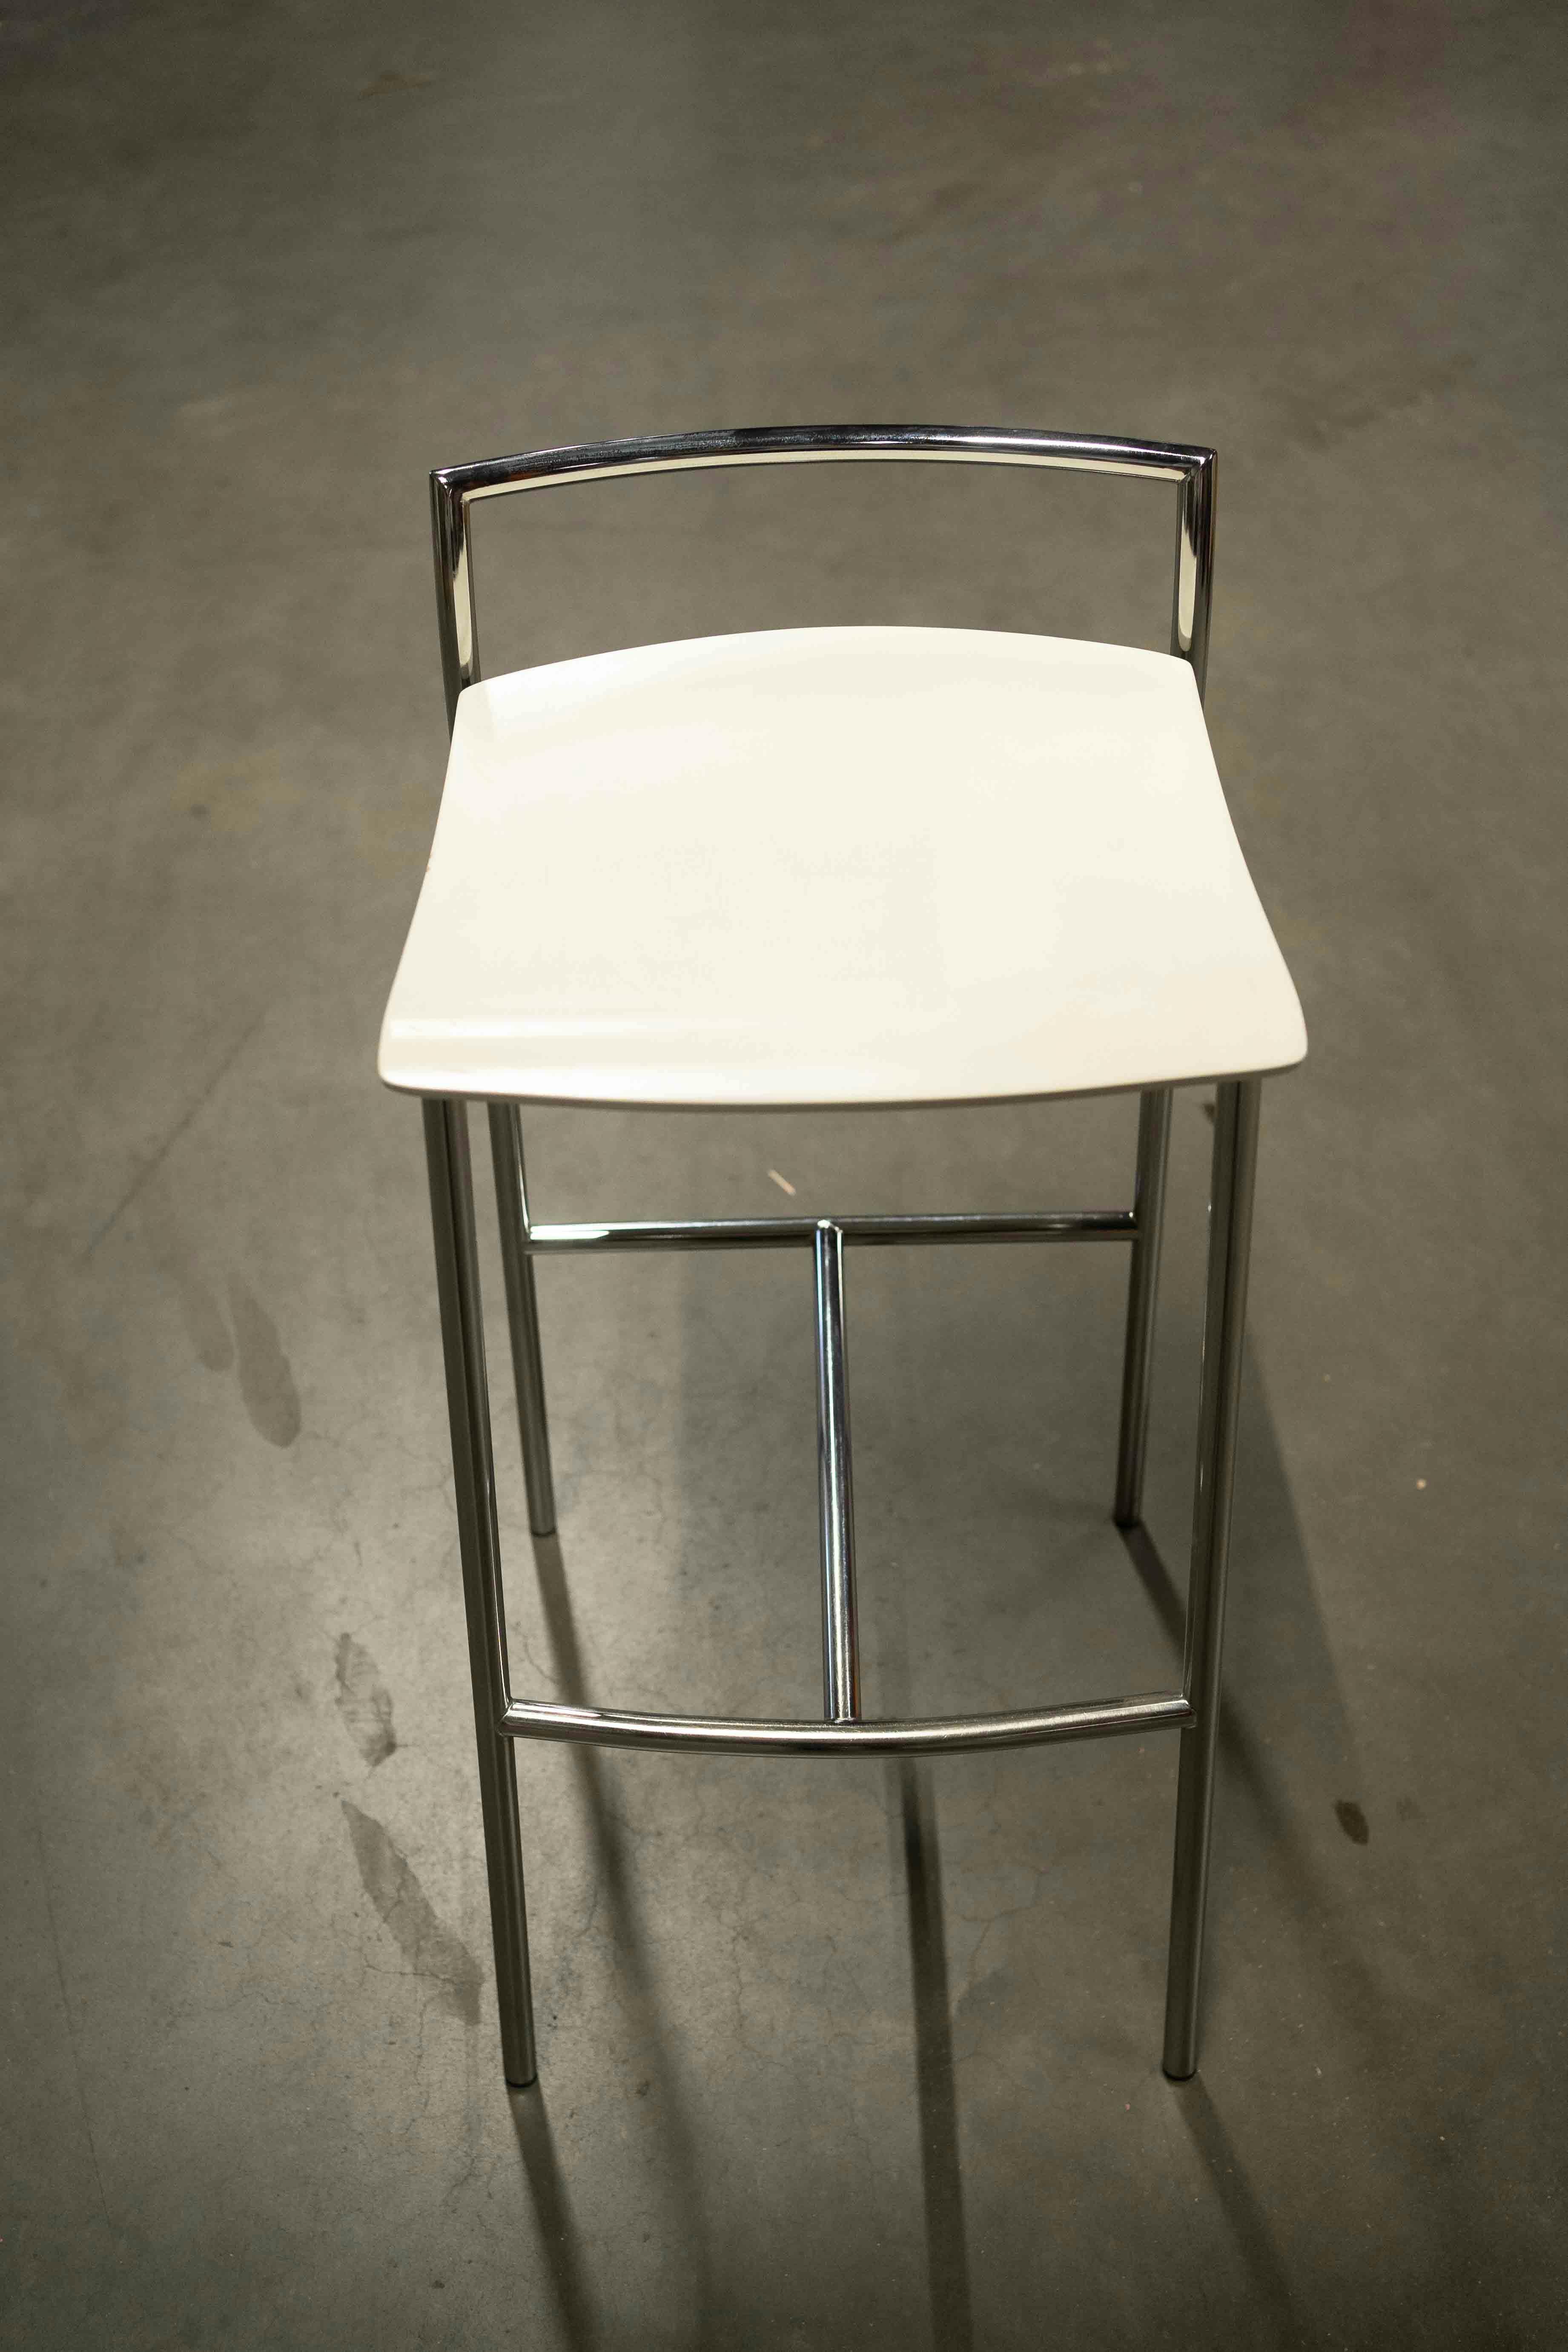 BEFI2500:Tabourets - Relieve Furniture